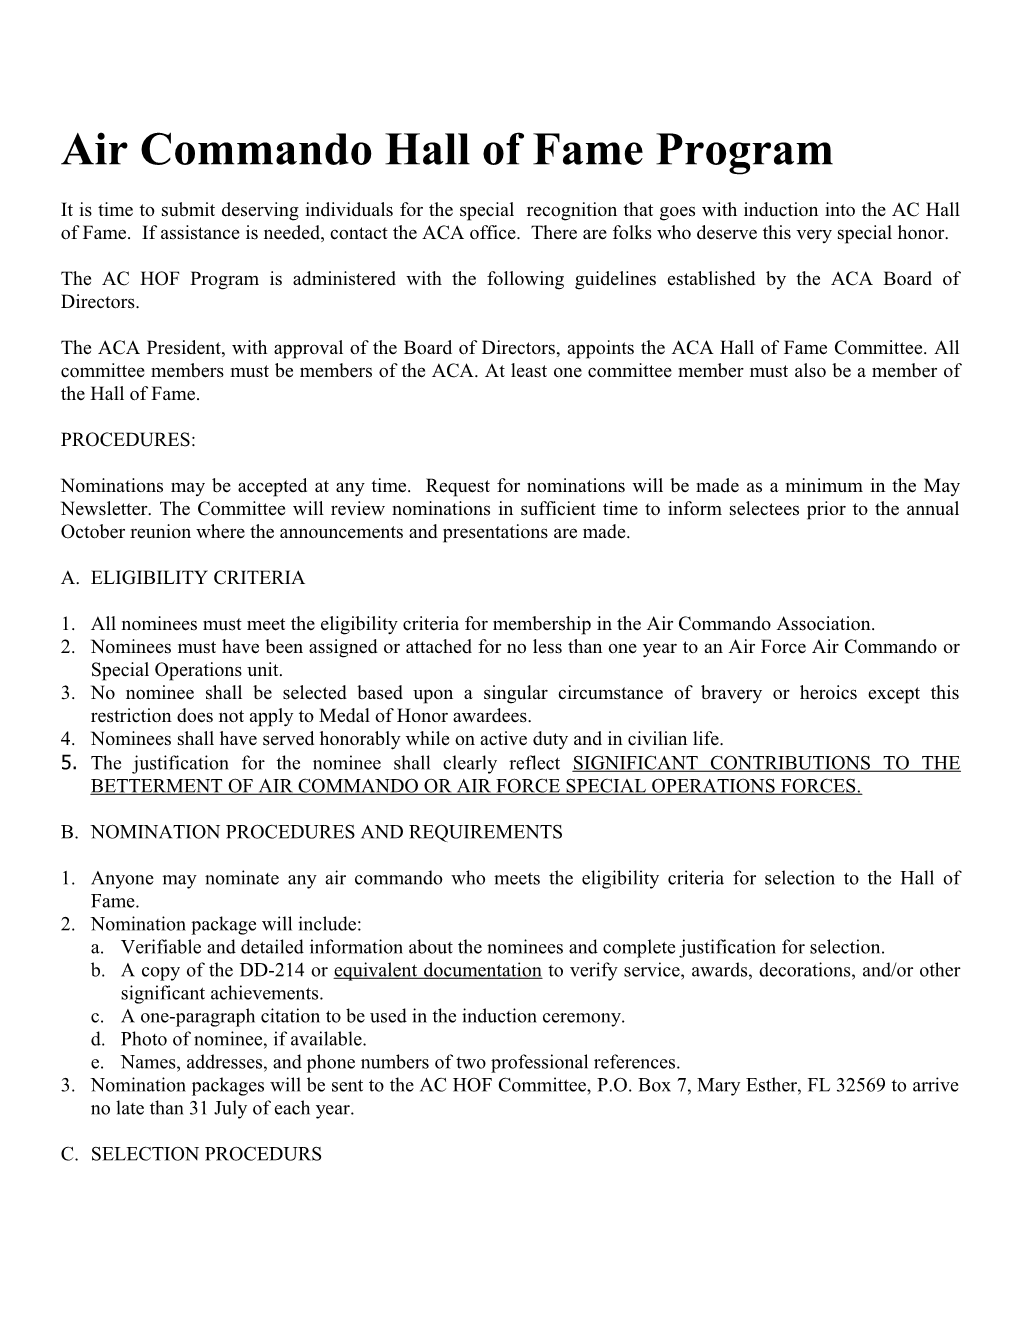 Air Commando Hall of Fame (AC HOF) Program